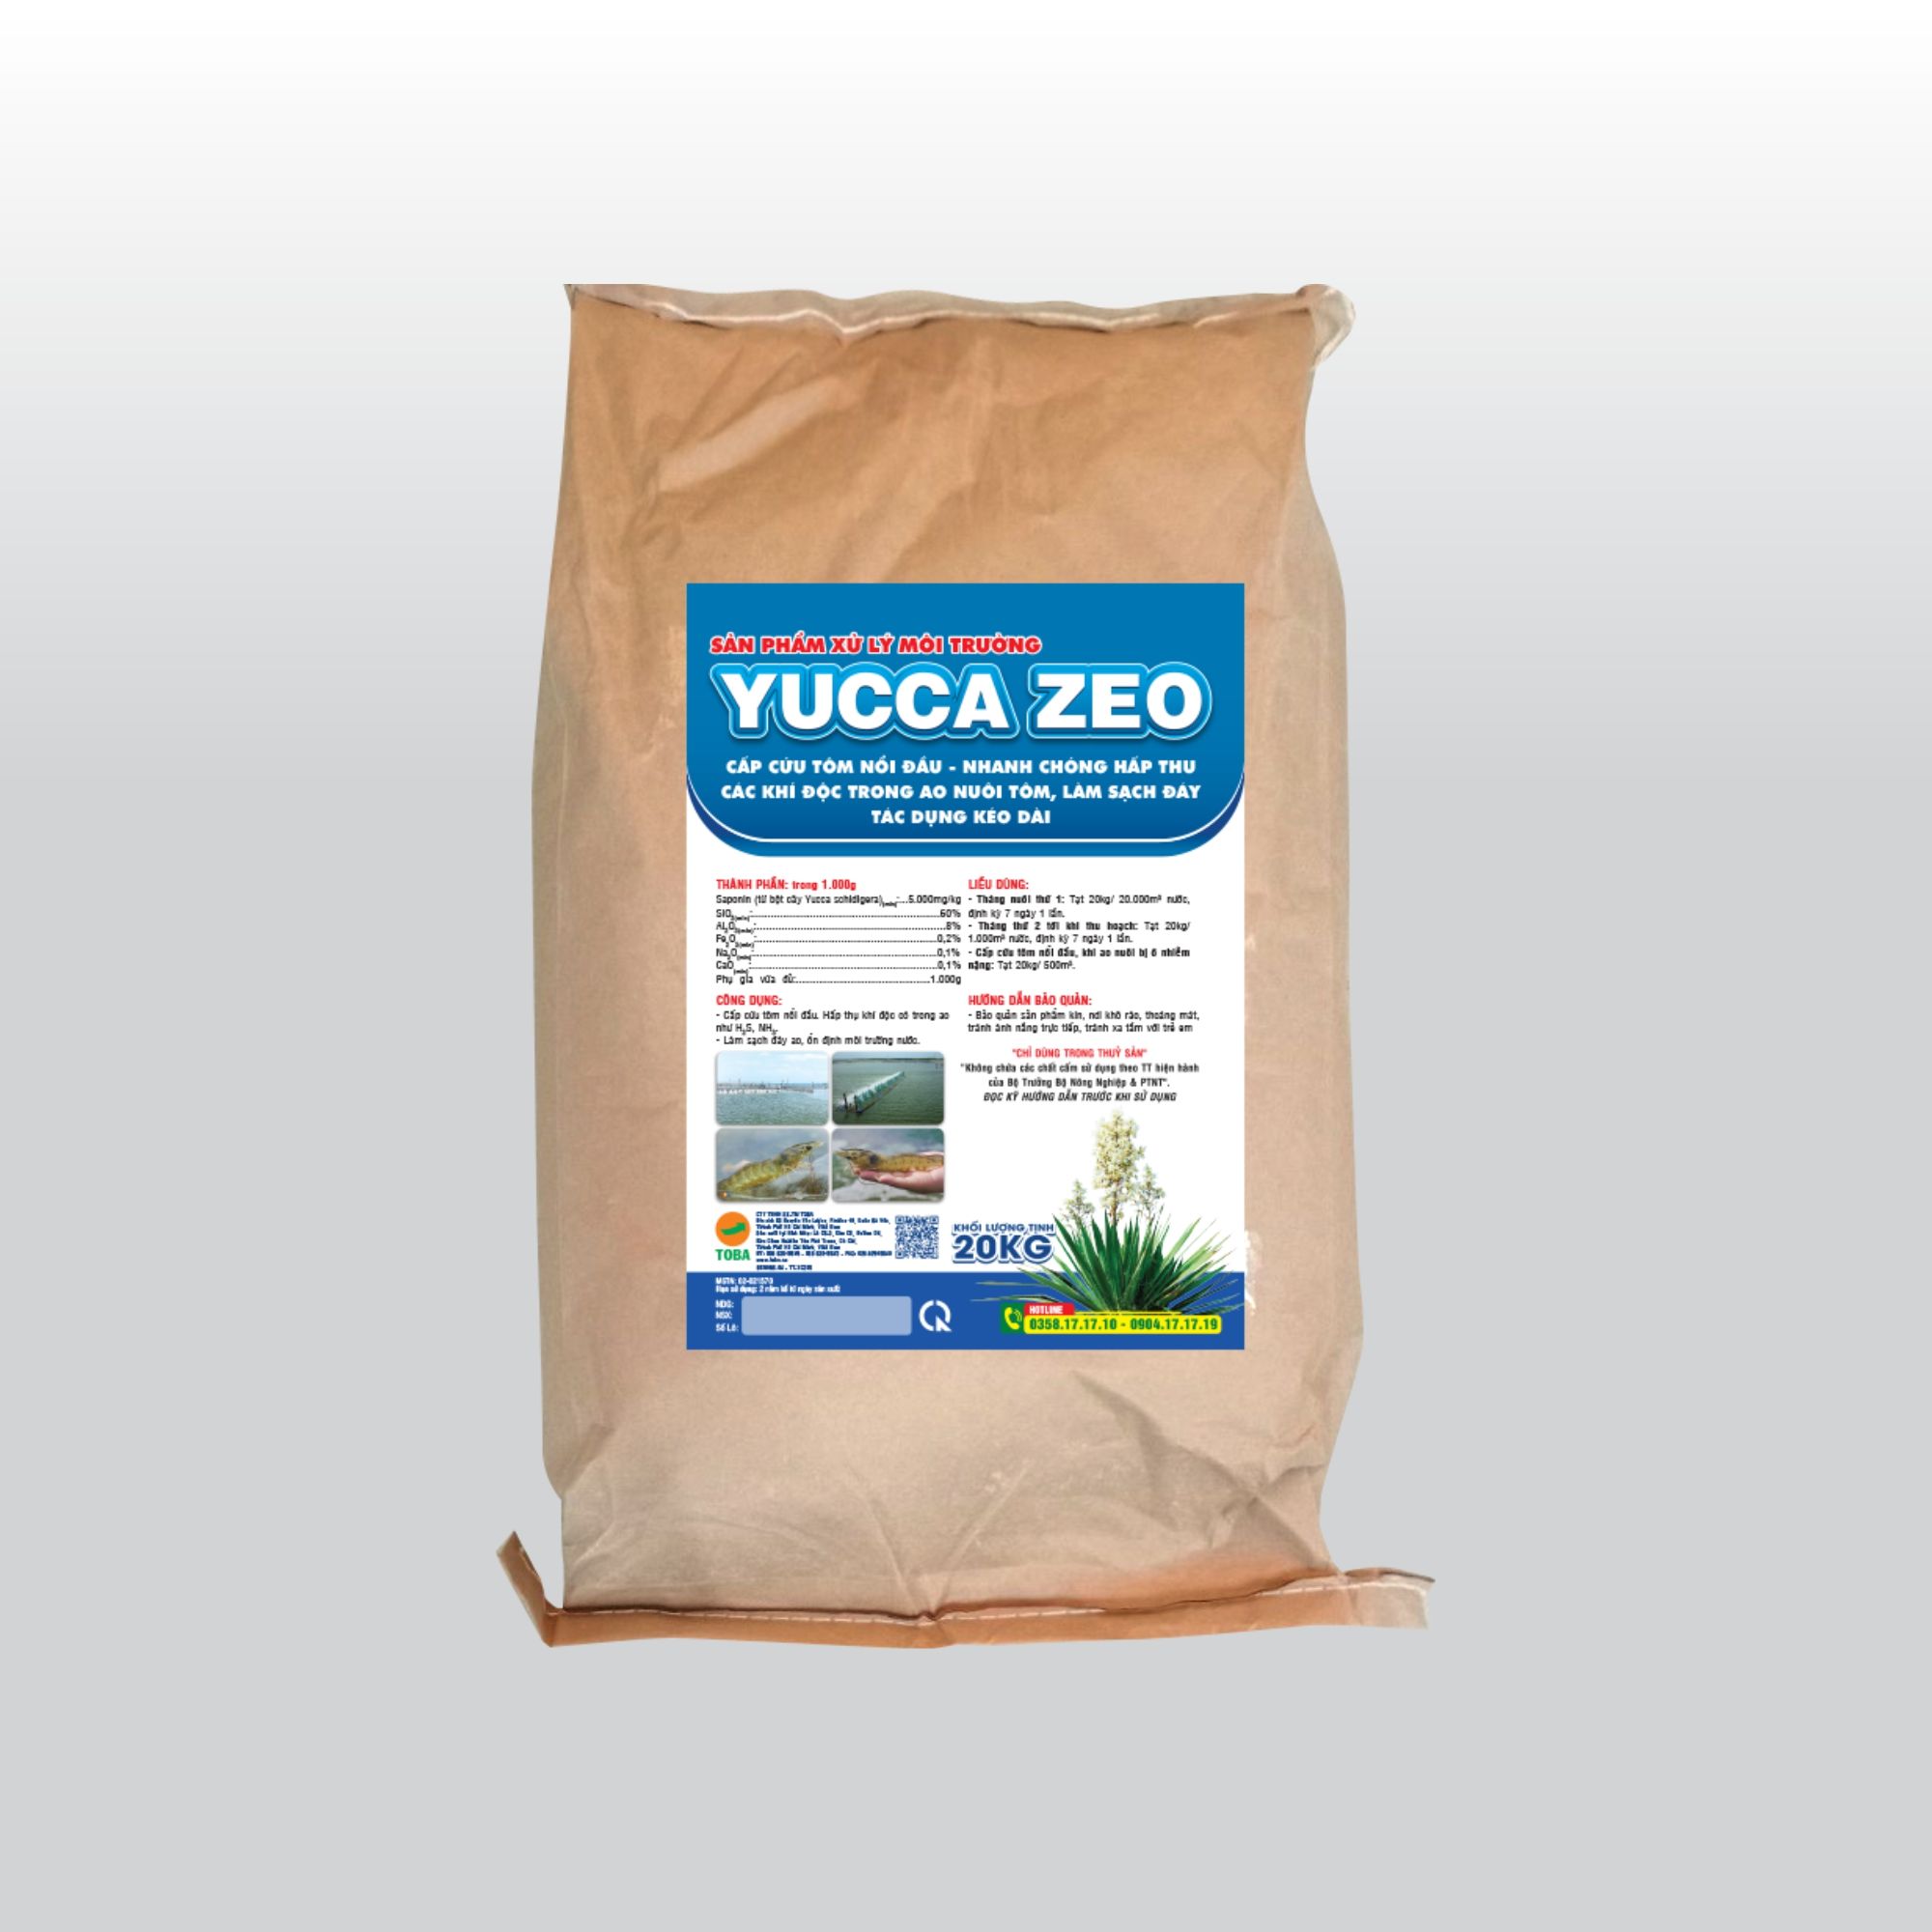 YUCCA ZEO 20KG - TT-YCZ05